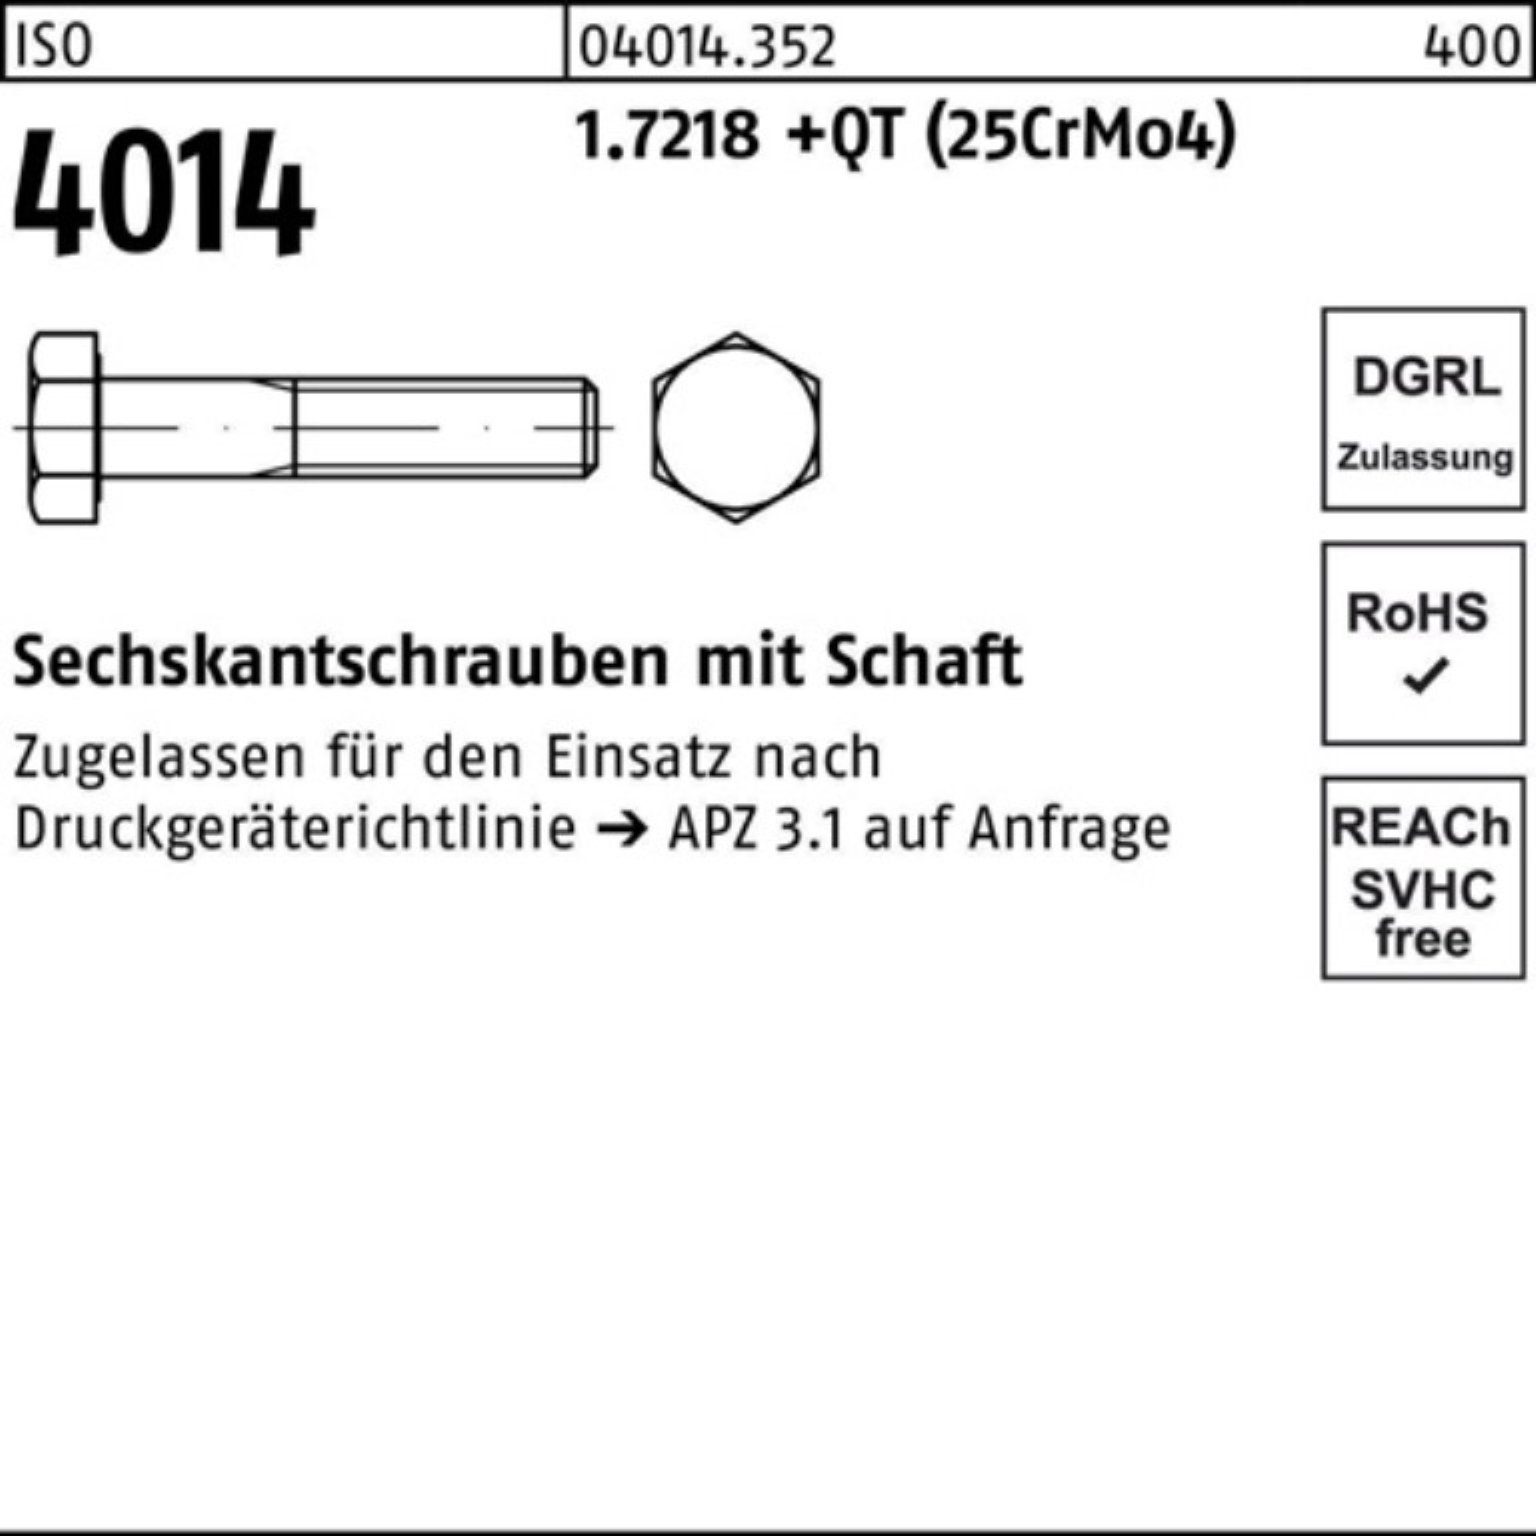 230 4014 Schaft 100er Sechskantschraube Sechskantschraube Pack (25Cr ISO M30x Bufab +QT 1.7218